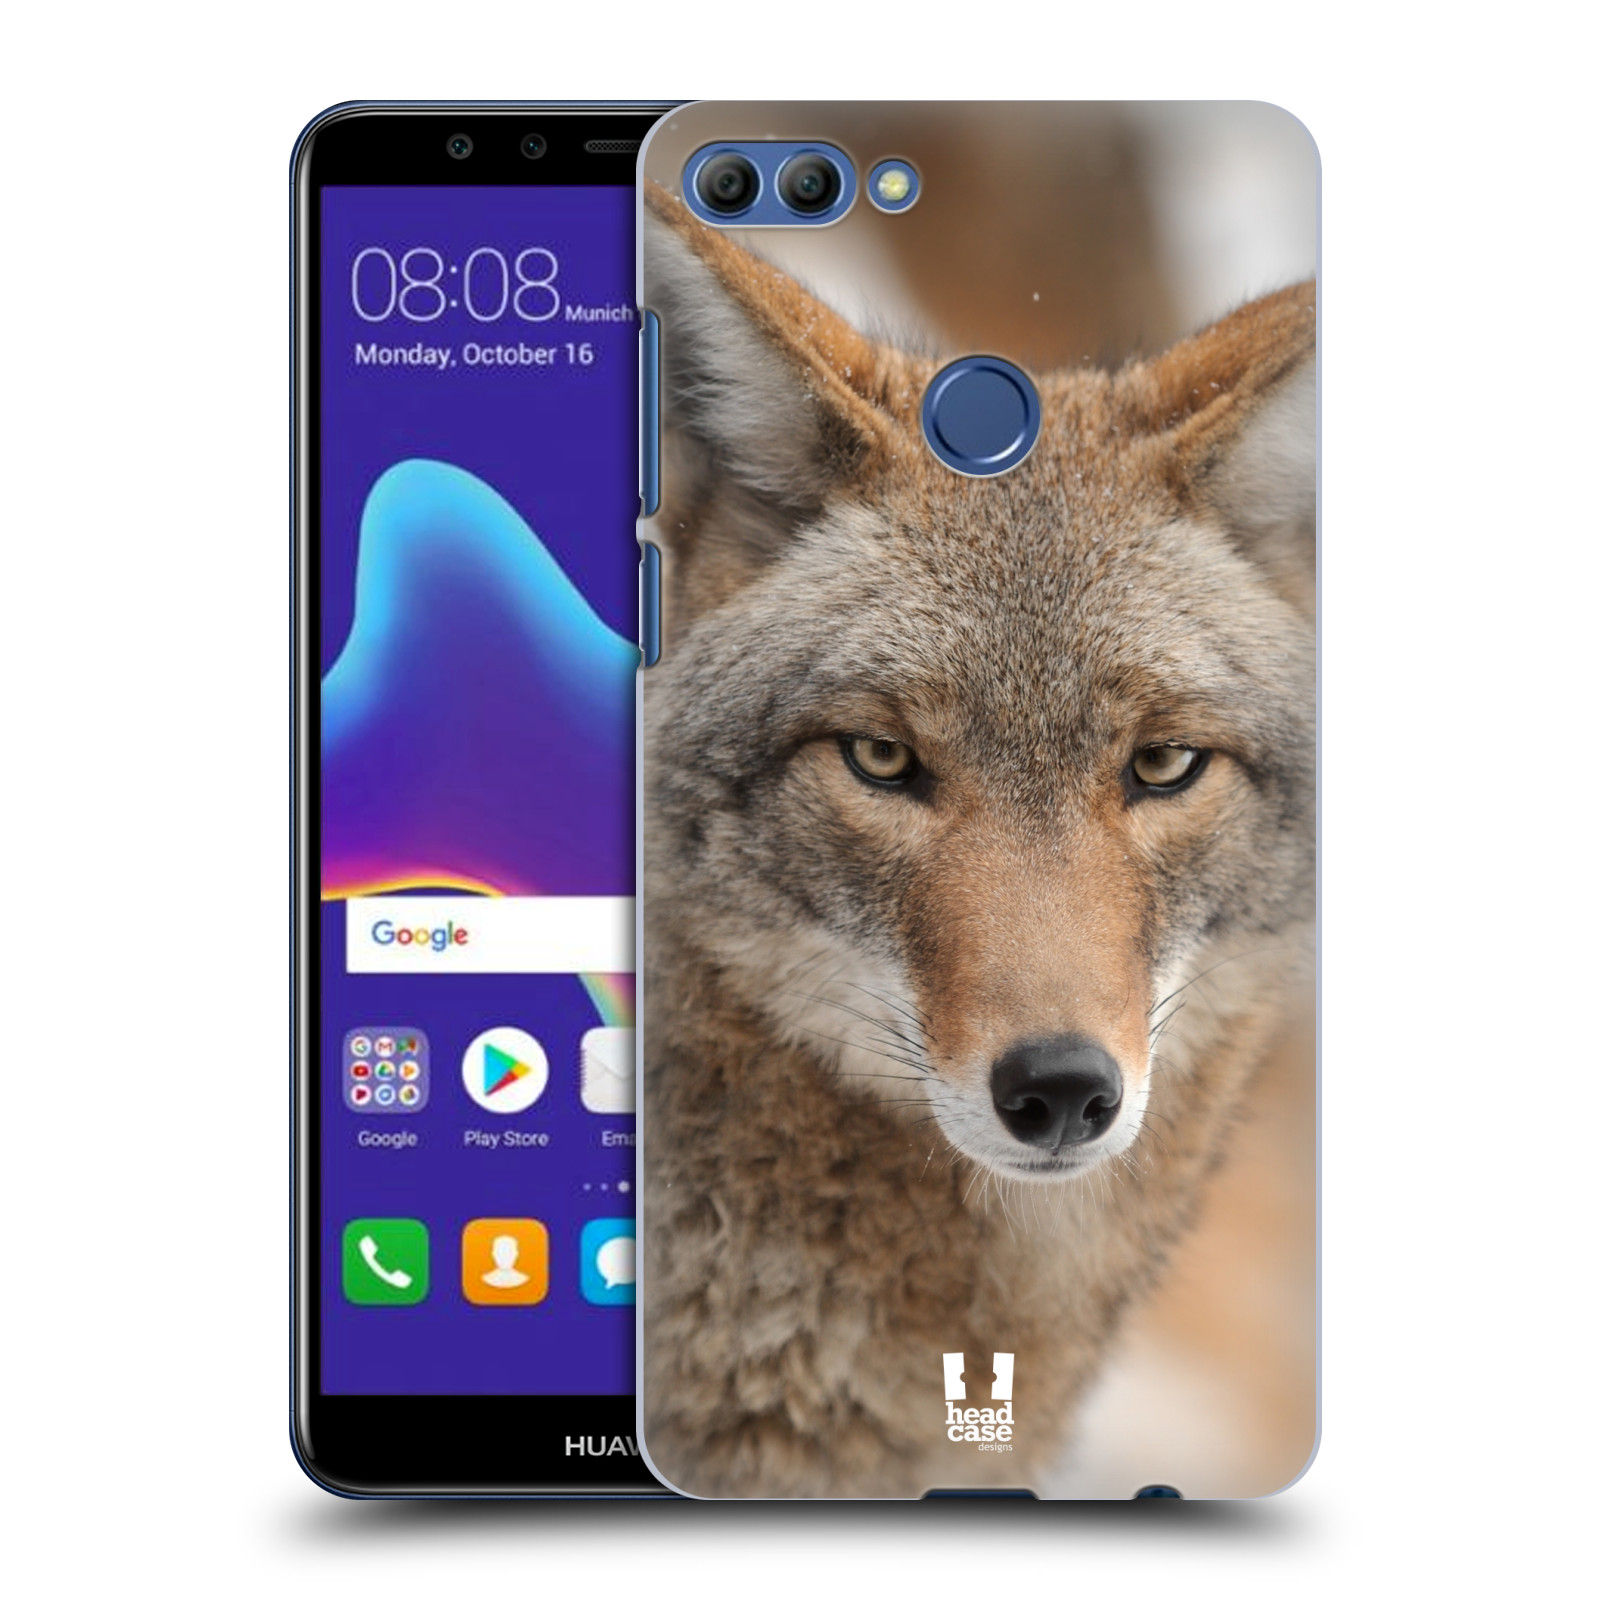 HEAD CASE plastový obal na mobil Huawei Y9 2018 vzor slavná zvířata foto kojot